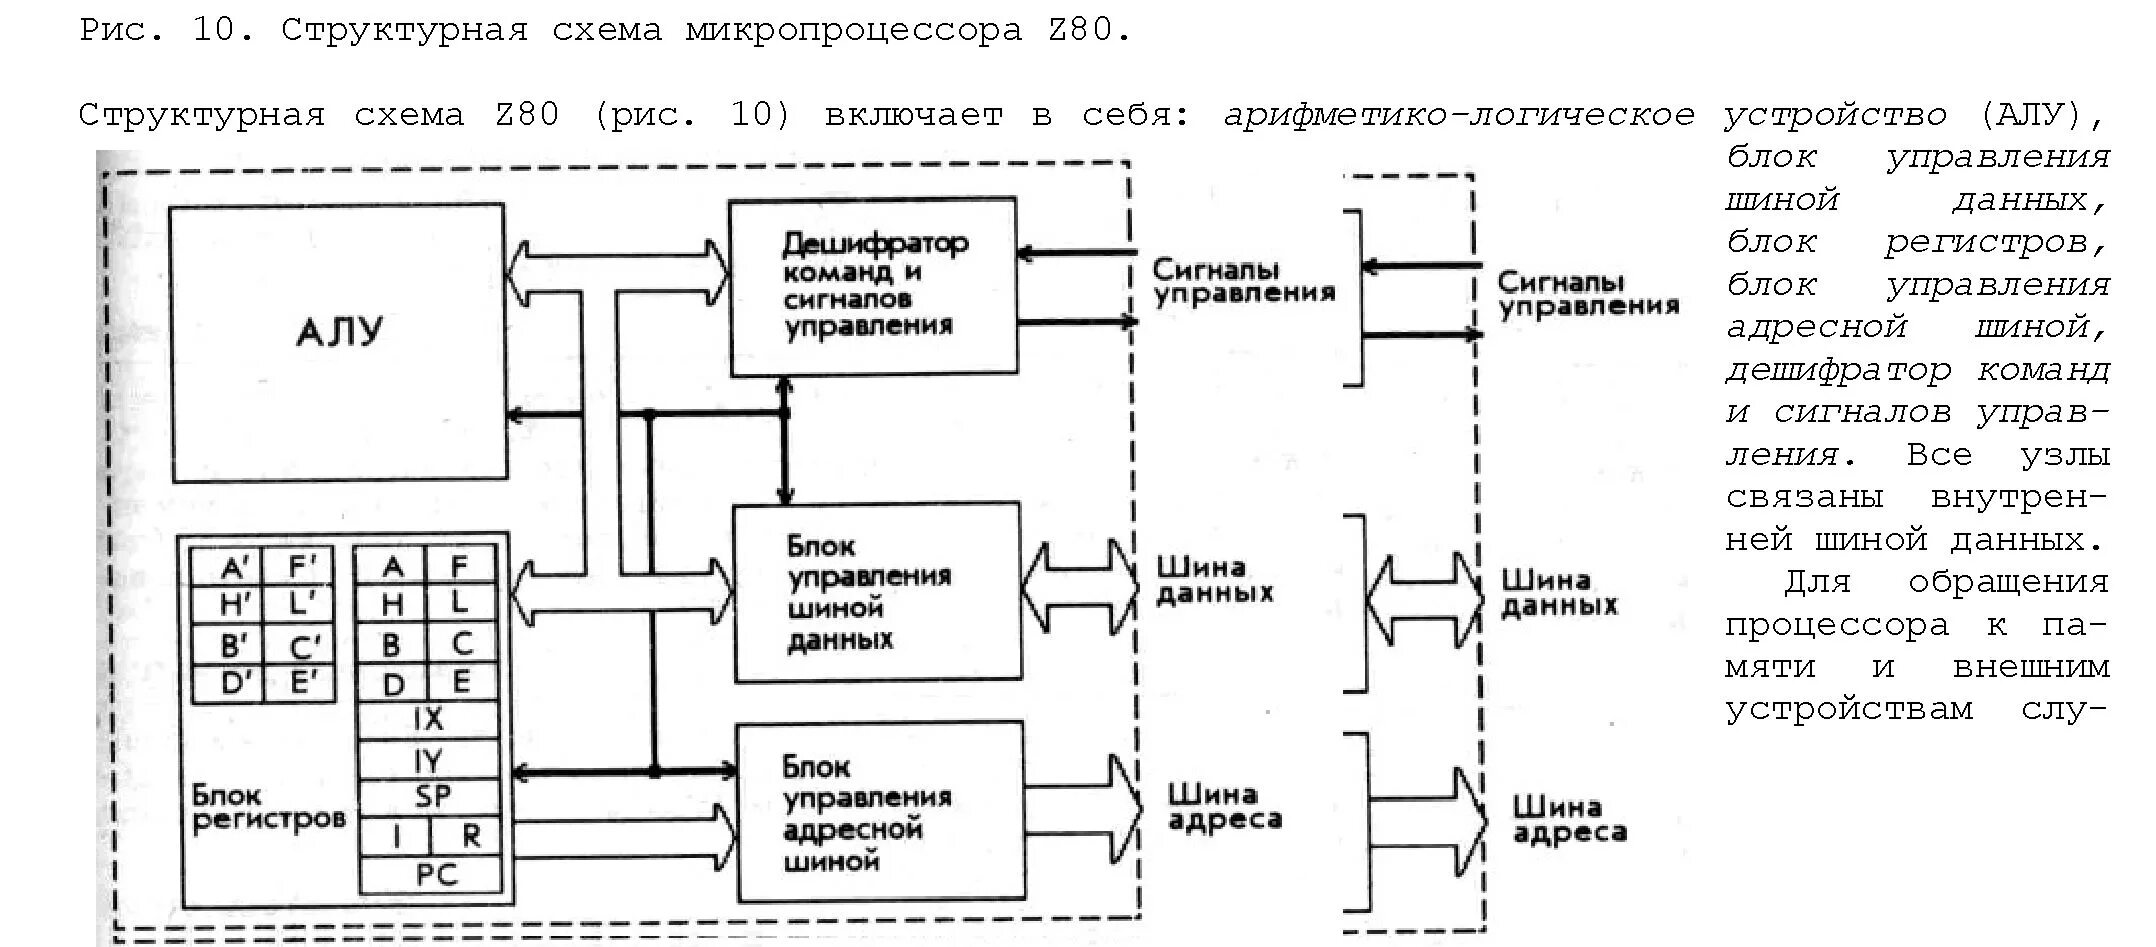 Микропроцессор z80 архитектура. Схема процессора z80. Структурная схема микропроцессорного устройства. Принципиальная схема процессора z80. Ала пк